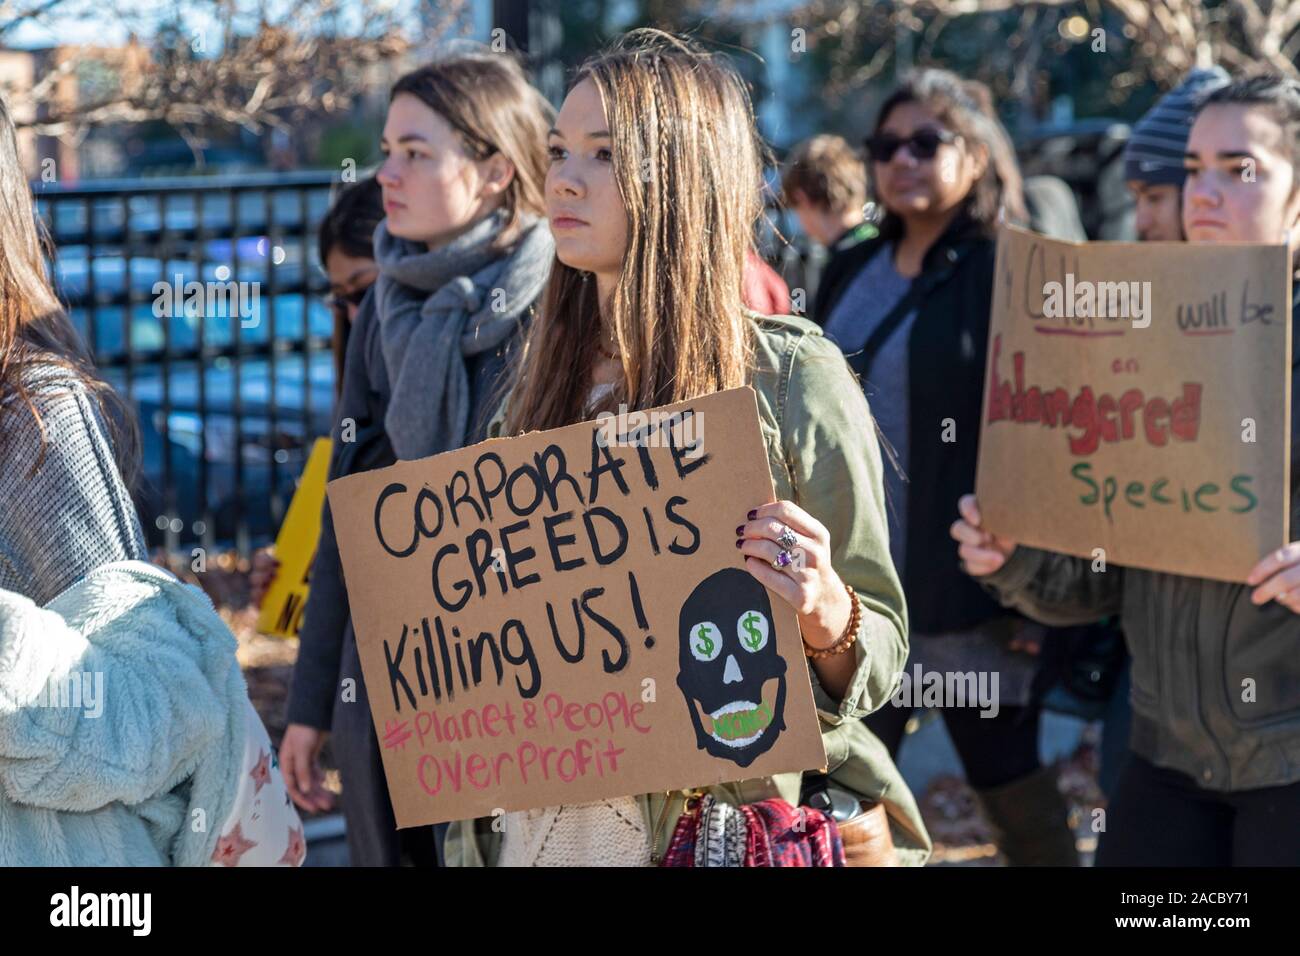 Washington, DC - activistas jóvenes celebró un funeral para el futuro" en el Capitolio para exigir que los gobiernos aborden la crisis del cambio climático. Se p Foto de stock